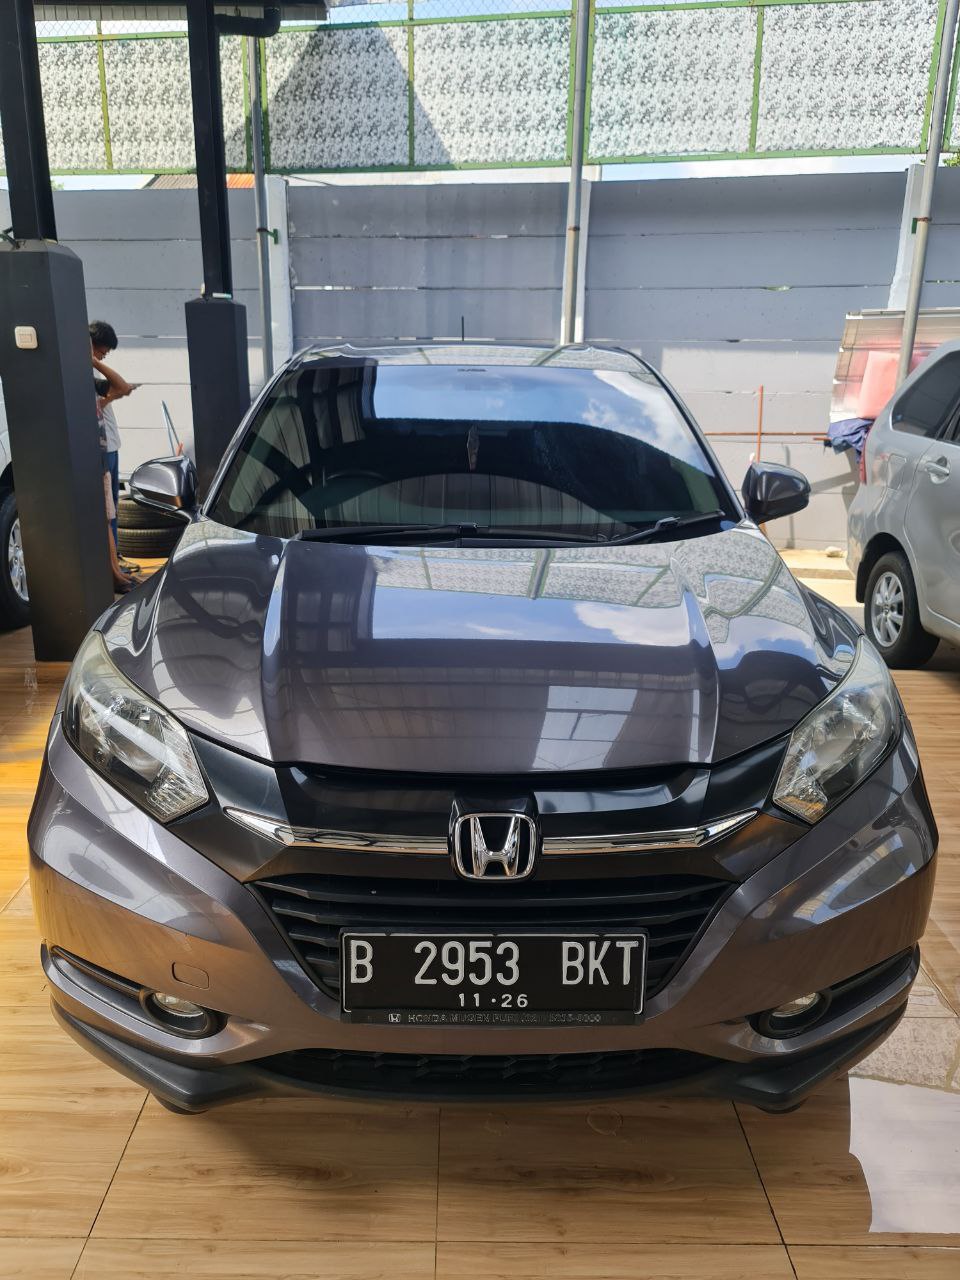 Honda HRV E Matic Tahun 2016 Warna Abu2 metalik kondisi Mulus Sangat Istimewa